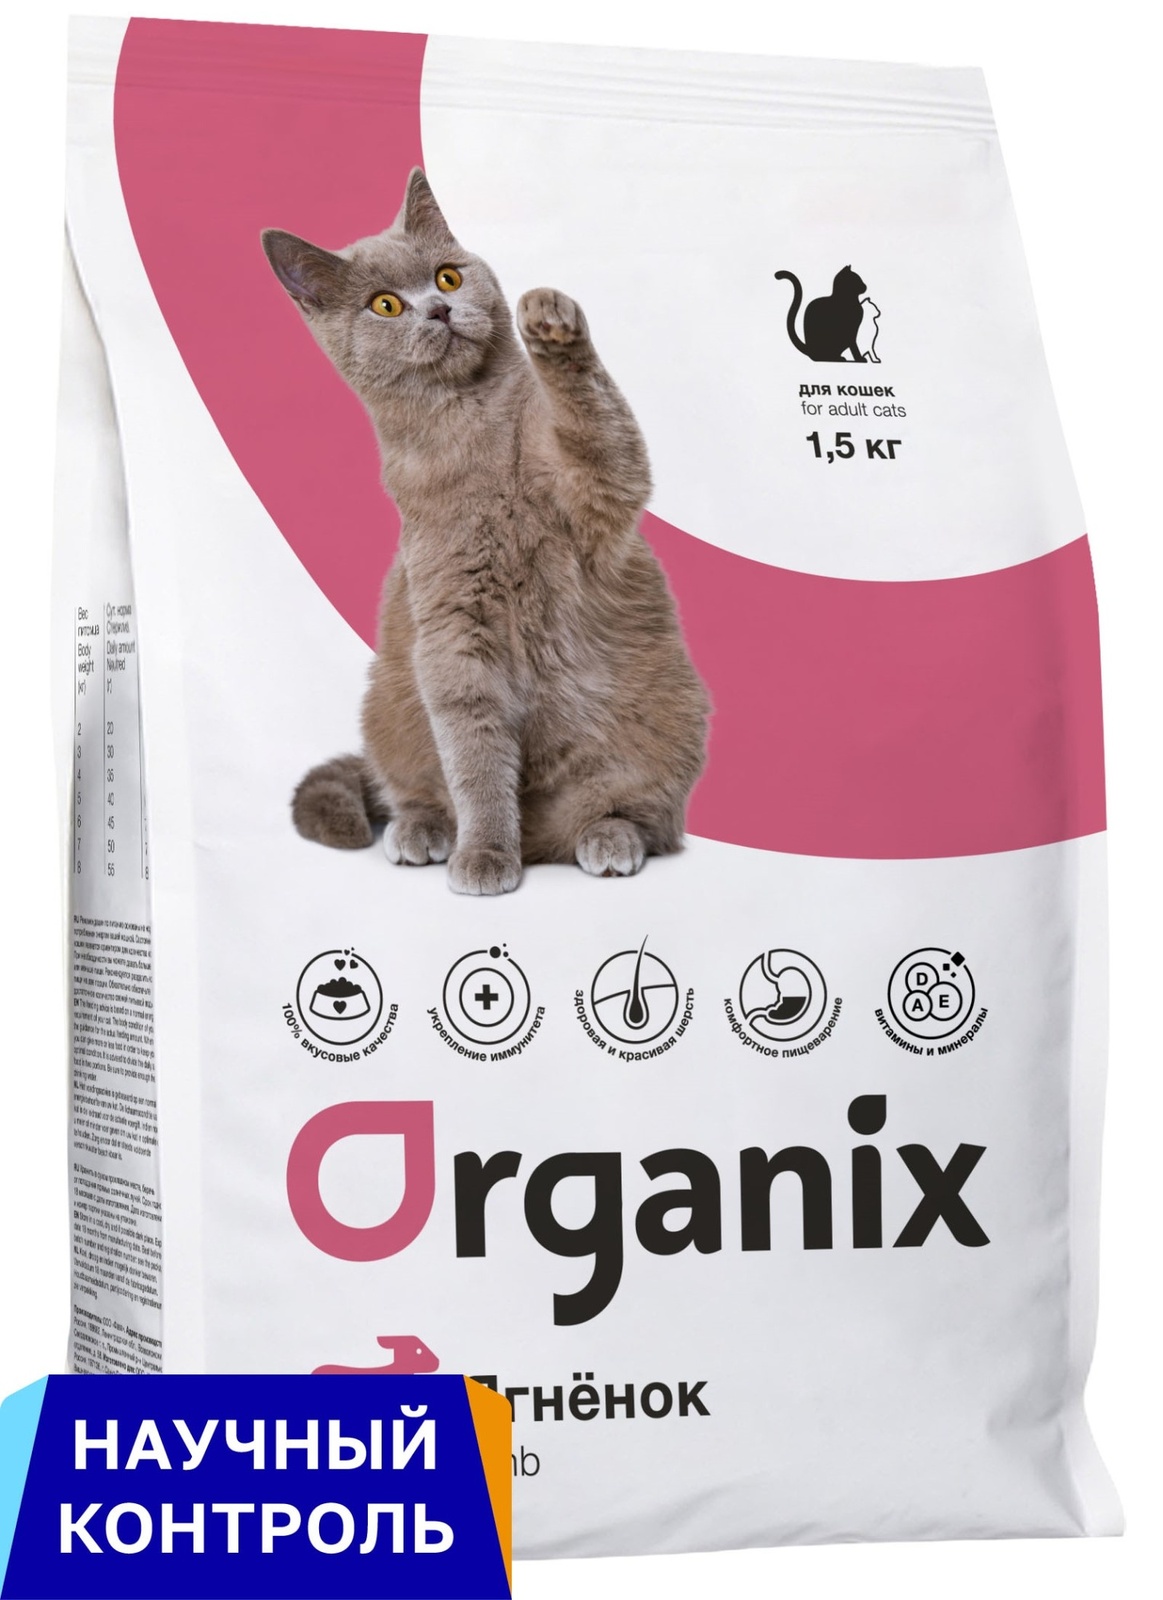 Organix  сухой корм для кошек, с ягненком (7,5 кг) Organix  сухой корм для кошек, с ягненком (7,5 кг) - фото 1